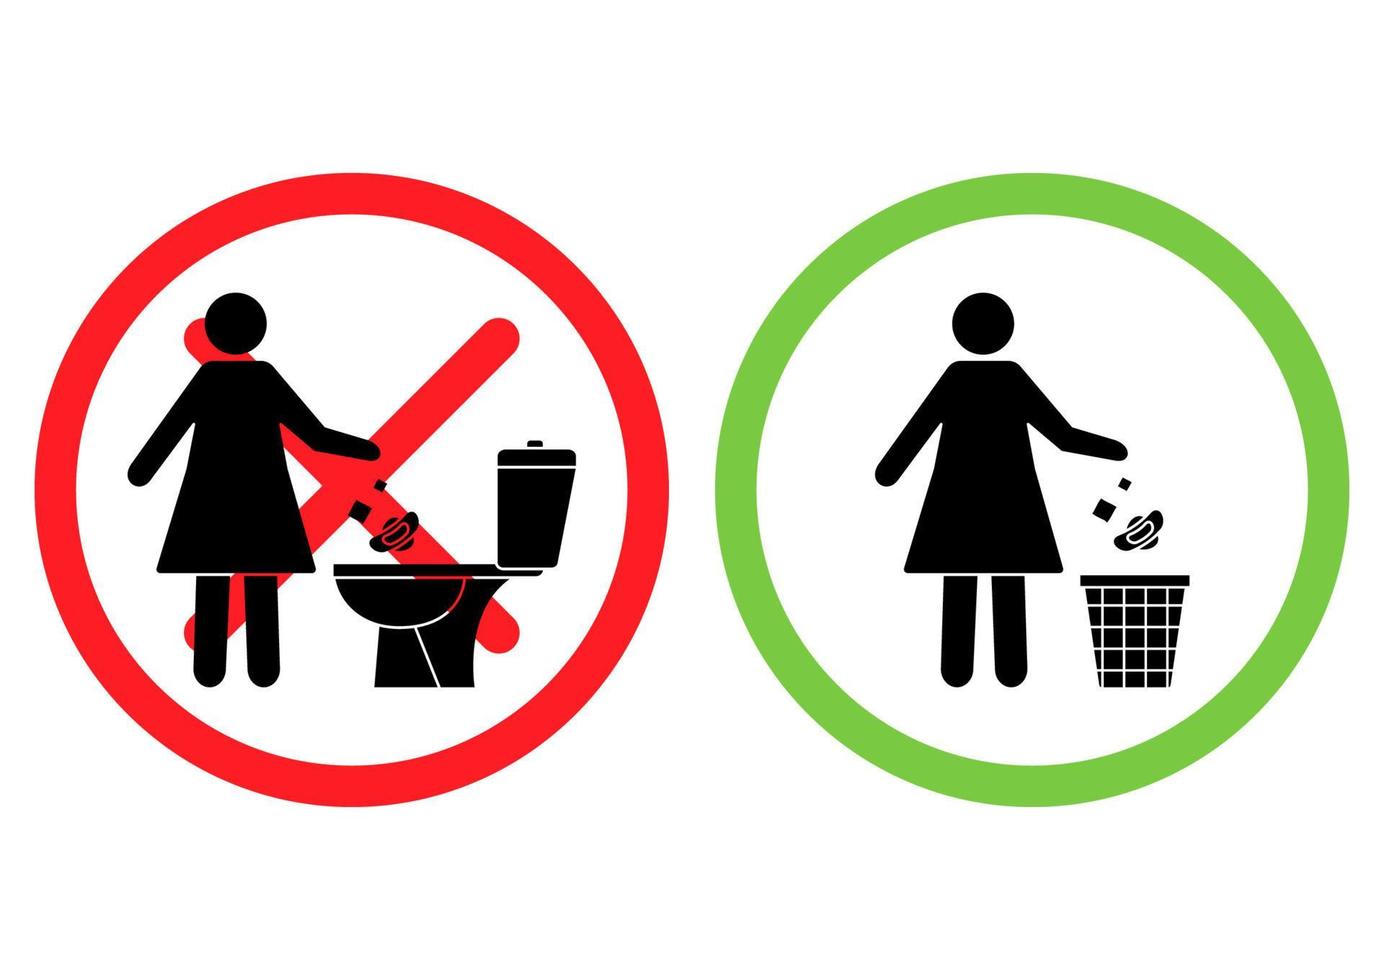 no tire basura en el inodoro. inodoro sin basura. mujer arroja toallas sanitarias en el baño. Utilice un bote de basura para toallas de papel y productos sanitarios. iconos de prohibición. cartel prohibido vector